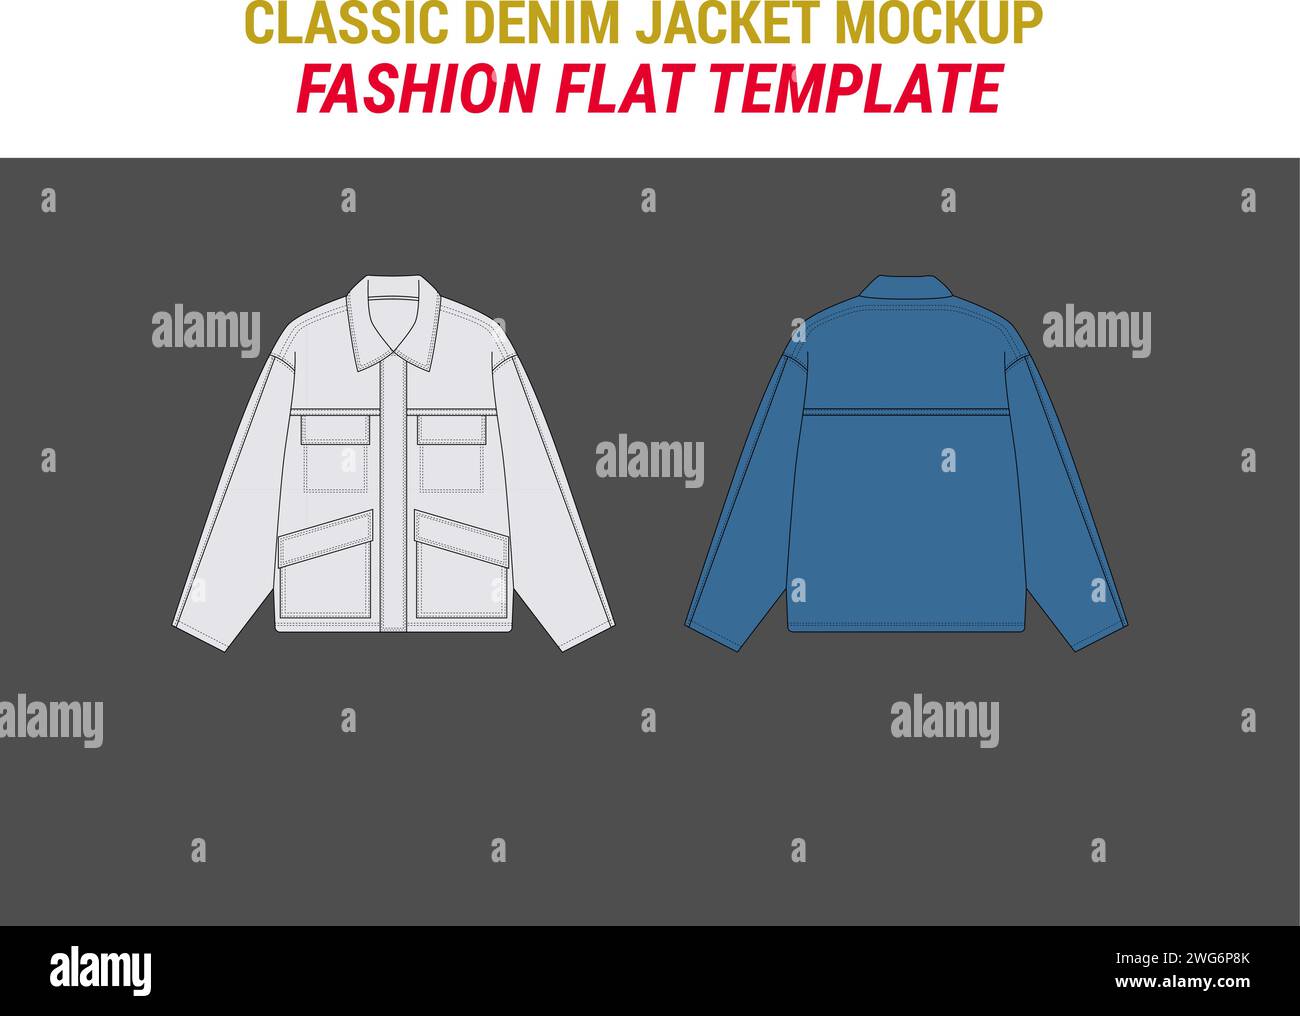 Giacca Vector in denim corto giacca oversize in denim classico modello fashion Vector Mockup streetwear in denim Illustrazione Vettoriale